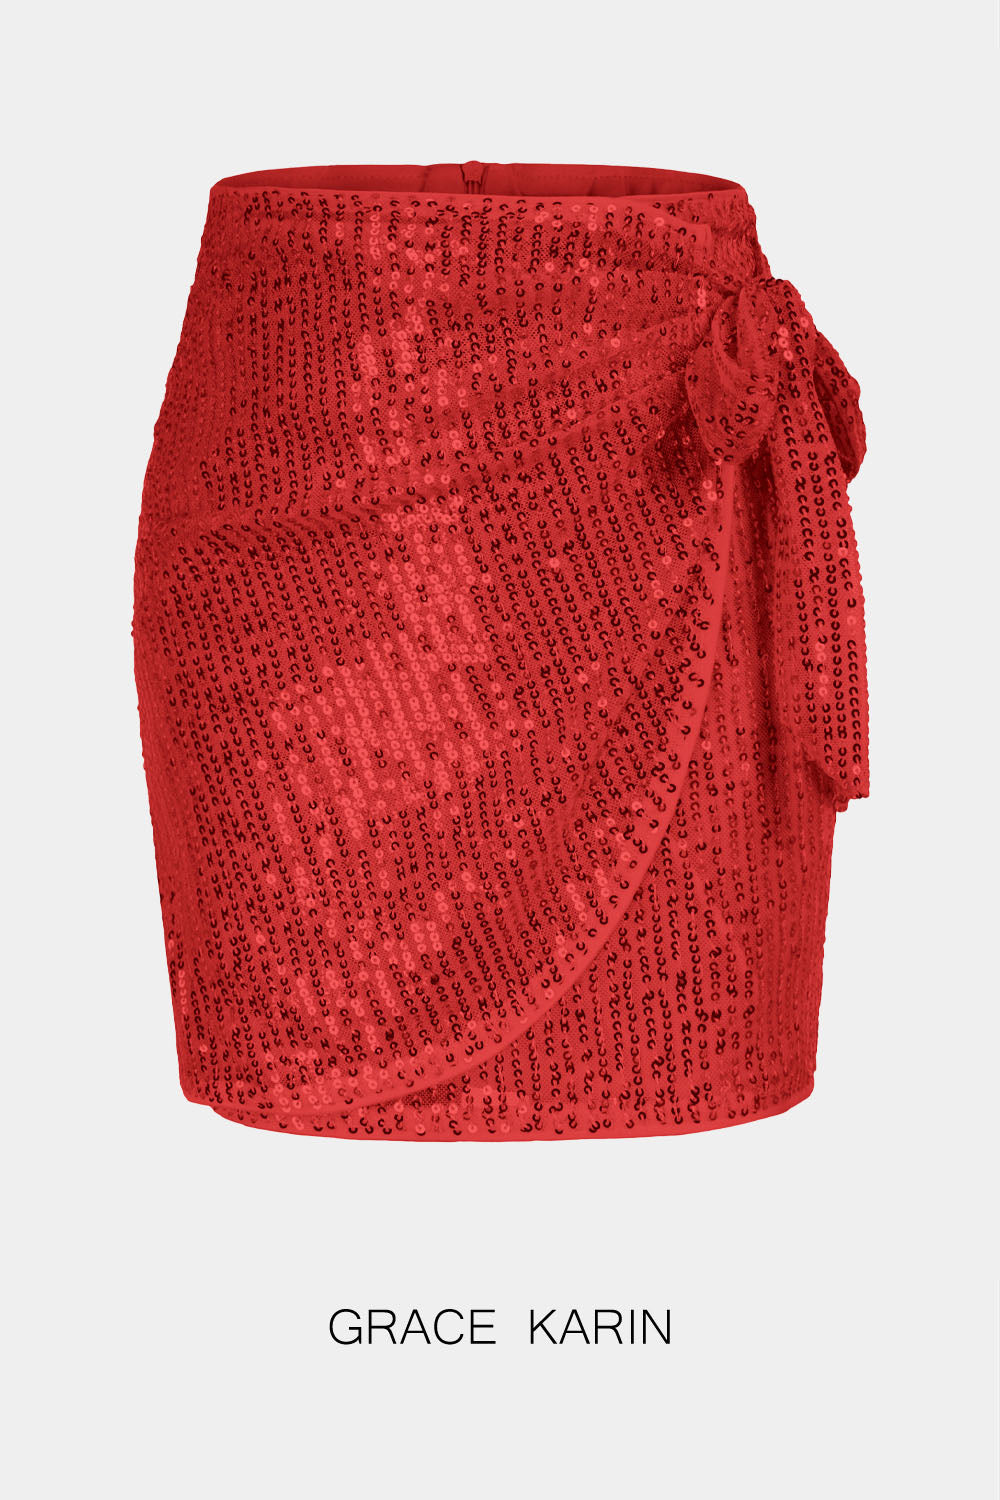 【Seulement 9,99 $】GRACE KARIN Mini-jupe à paillettes pour enfants, jupe taille haute décorée avec nœud papillon pour petites filles